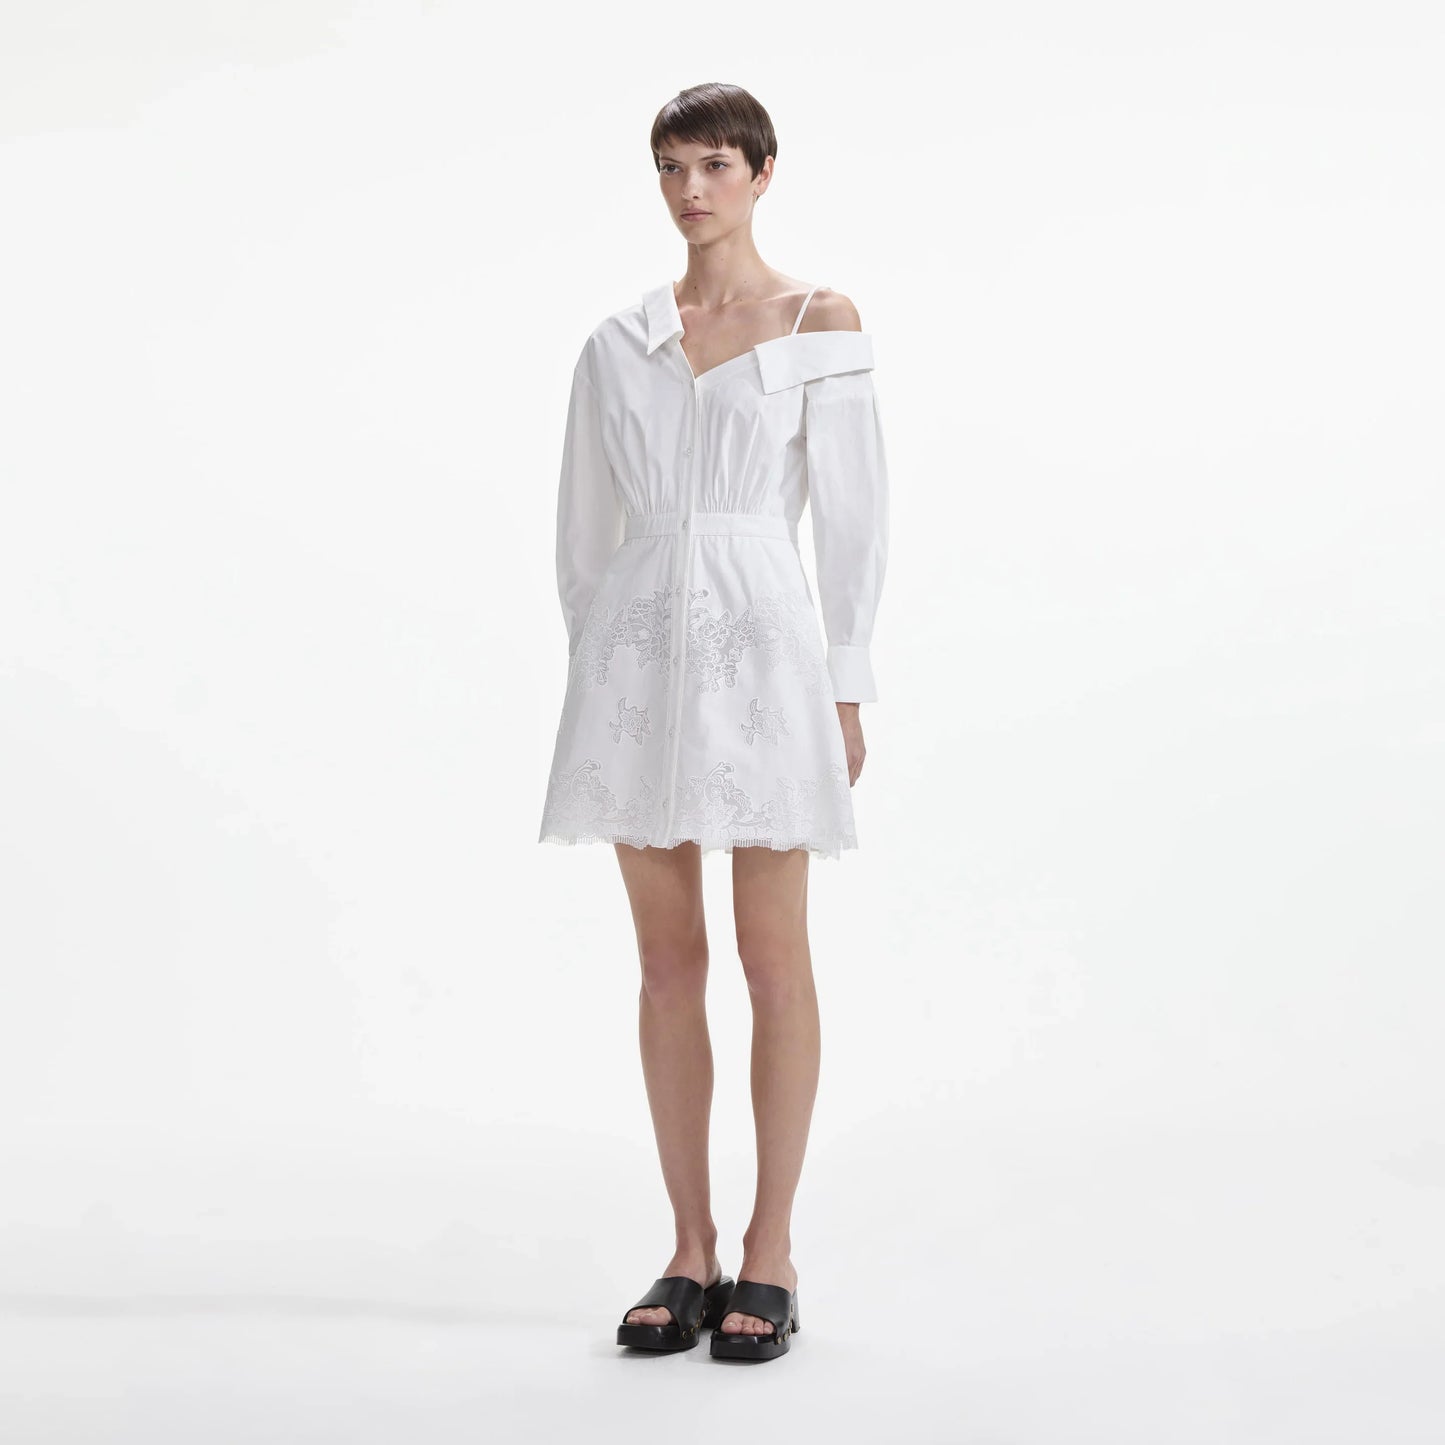 SP White Cotton Lace Hem Mini Dress